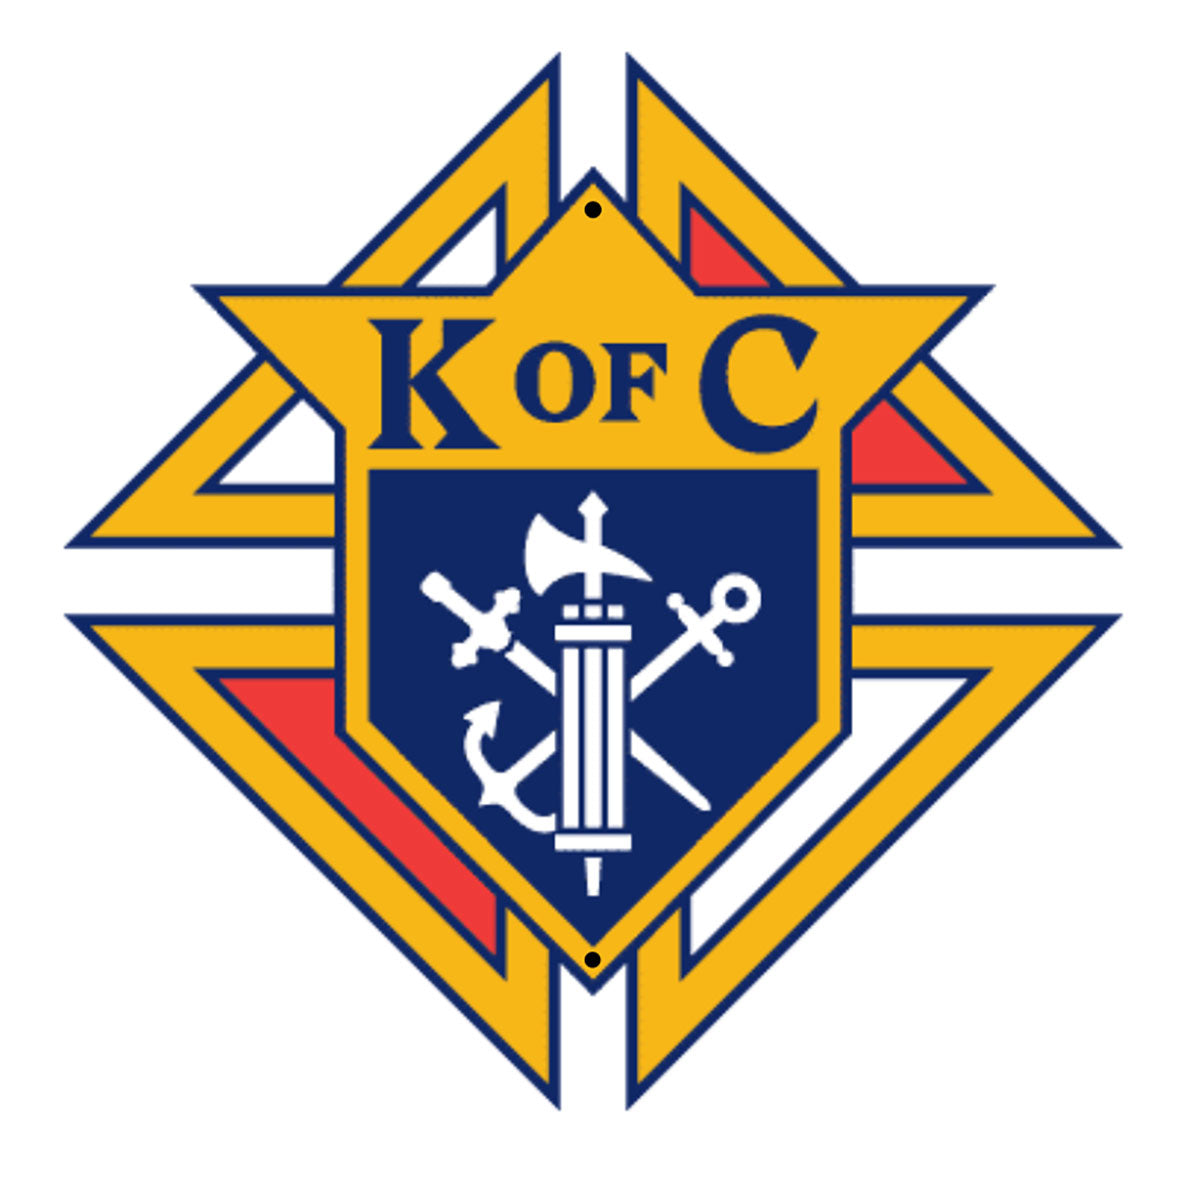 Letrero para interiores y exteriores de KofC - Emblema de la Orden